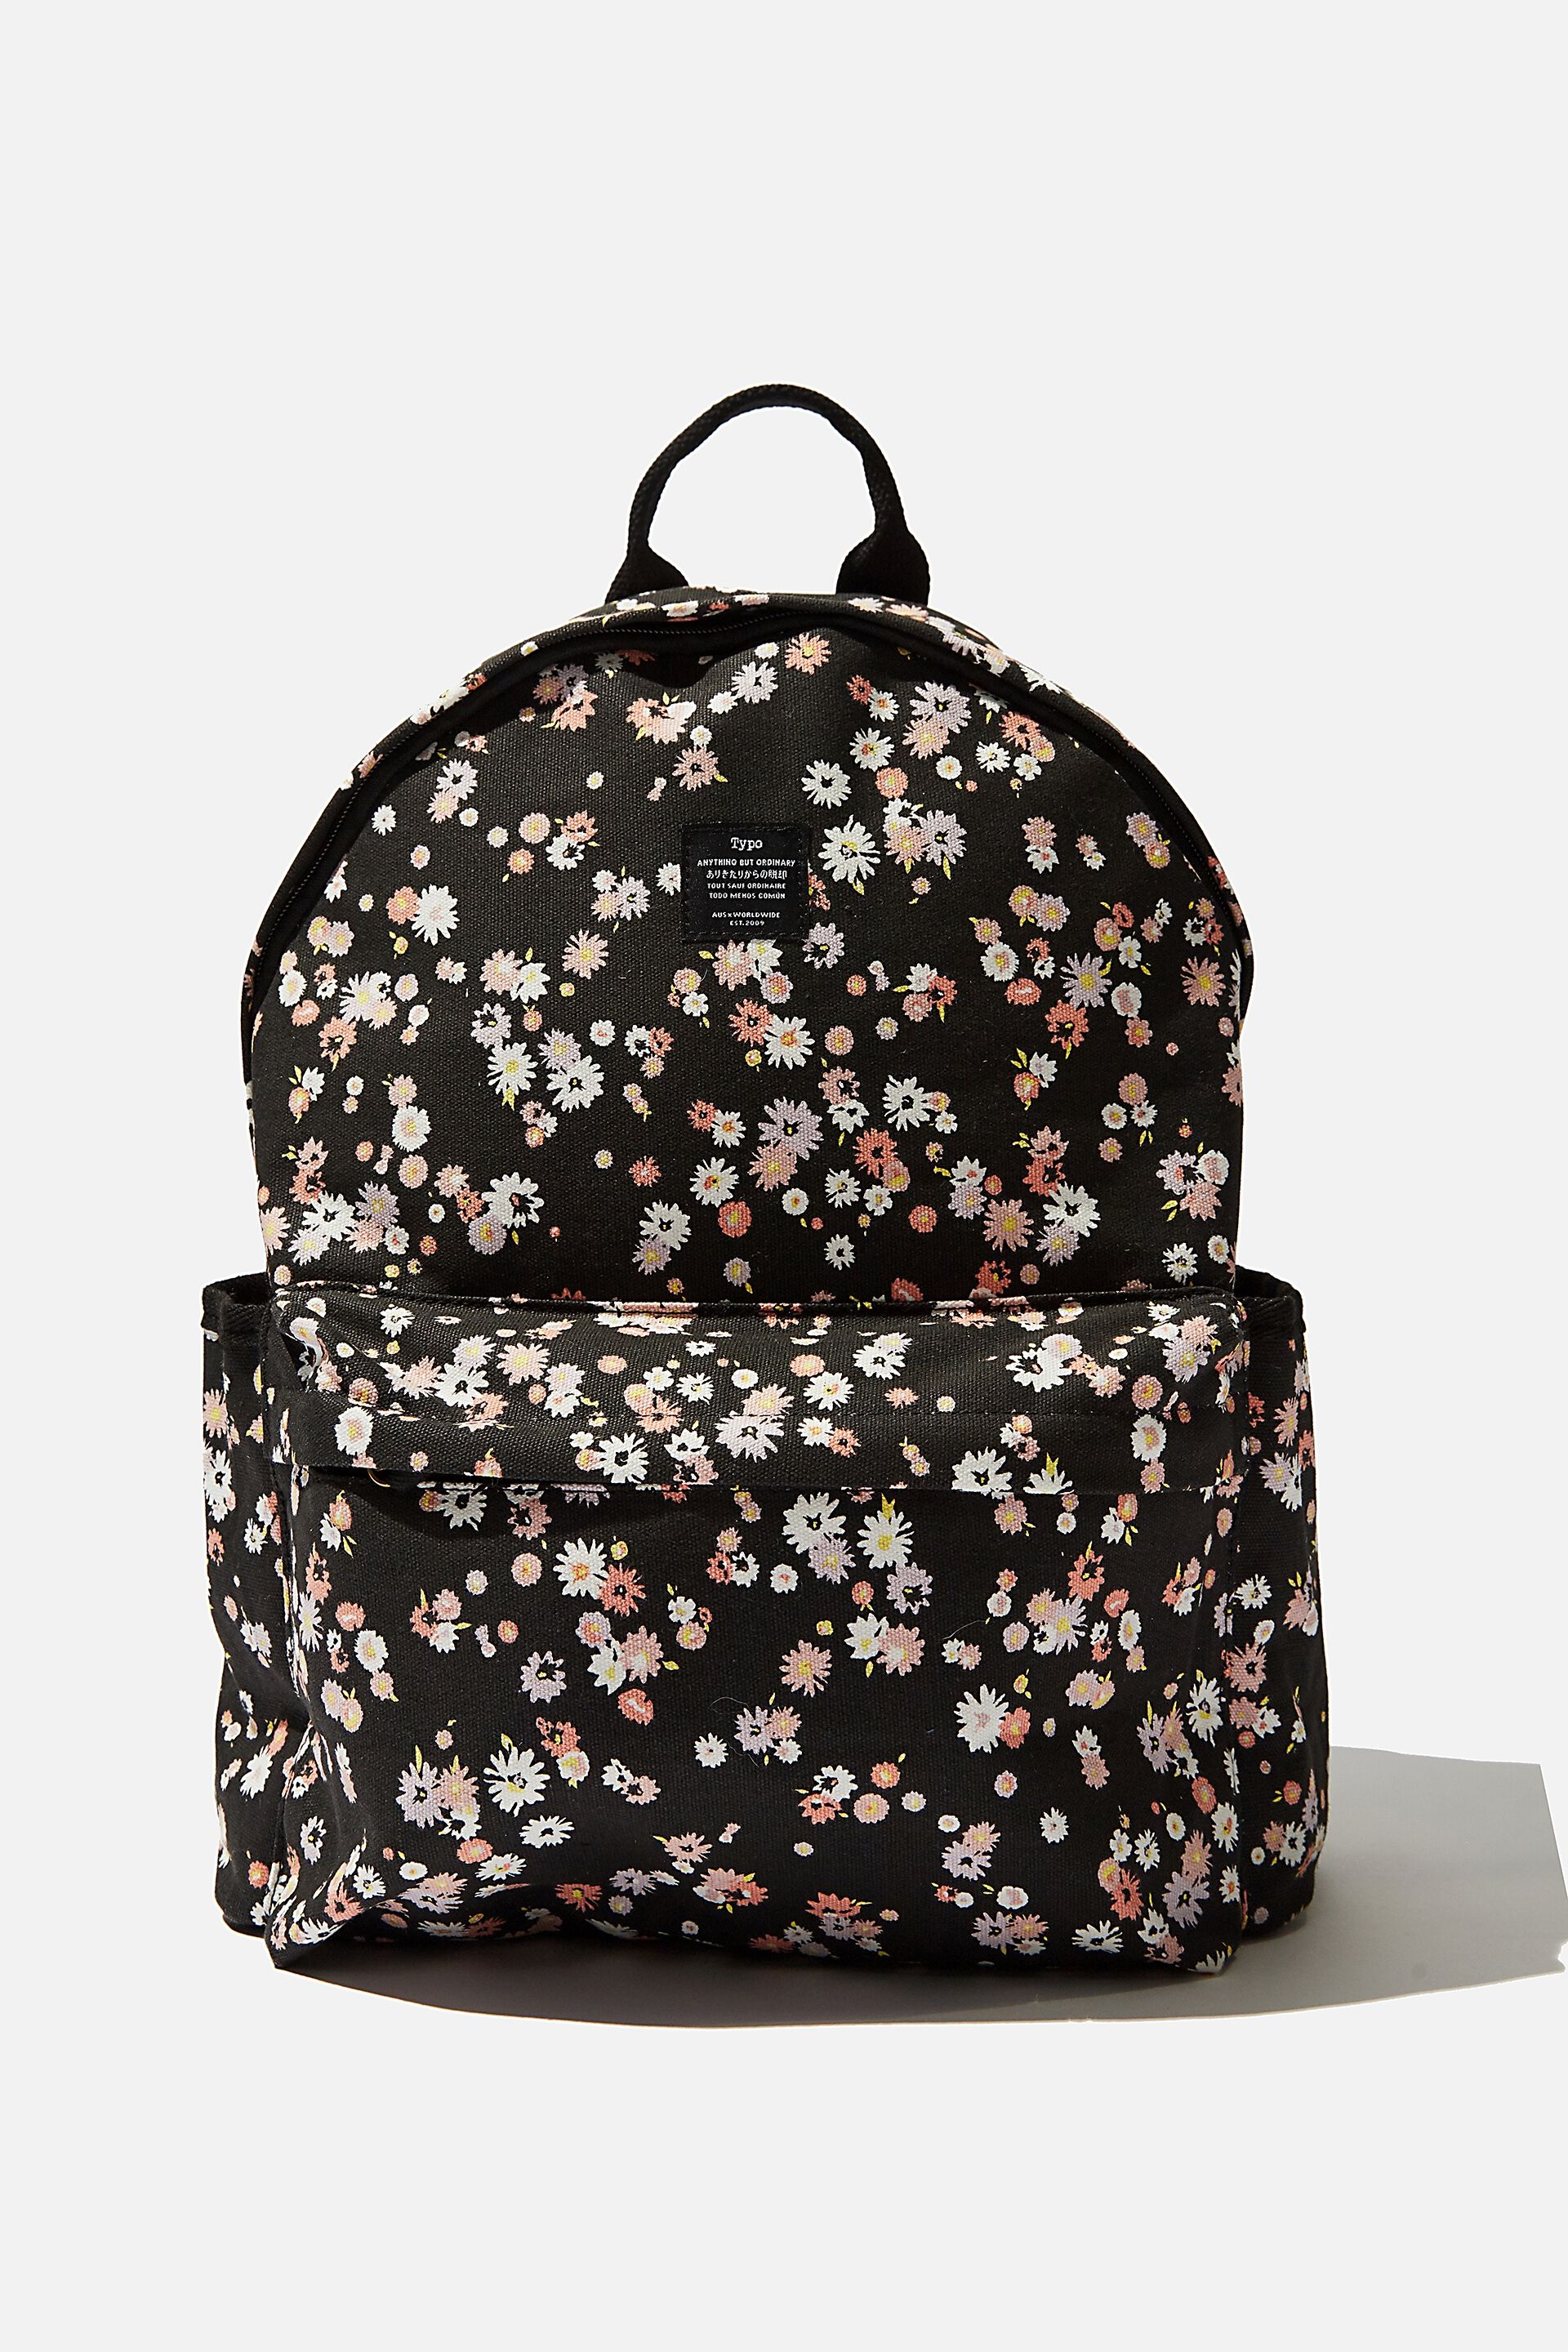 backpacks under $30